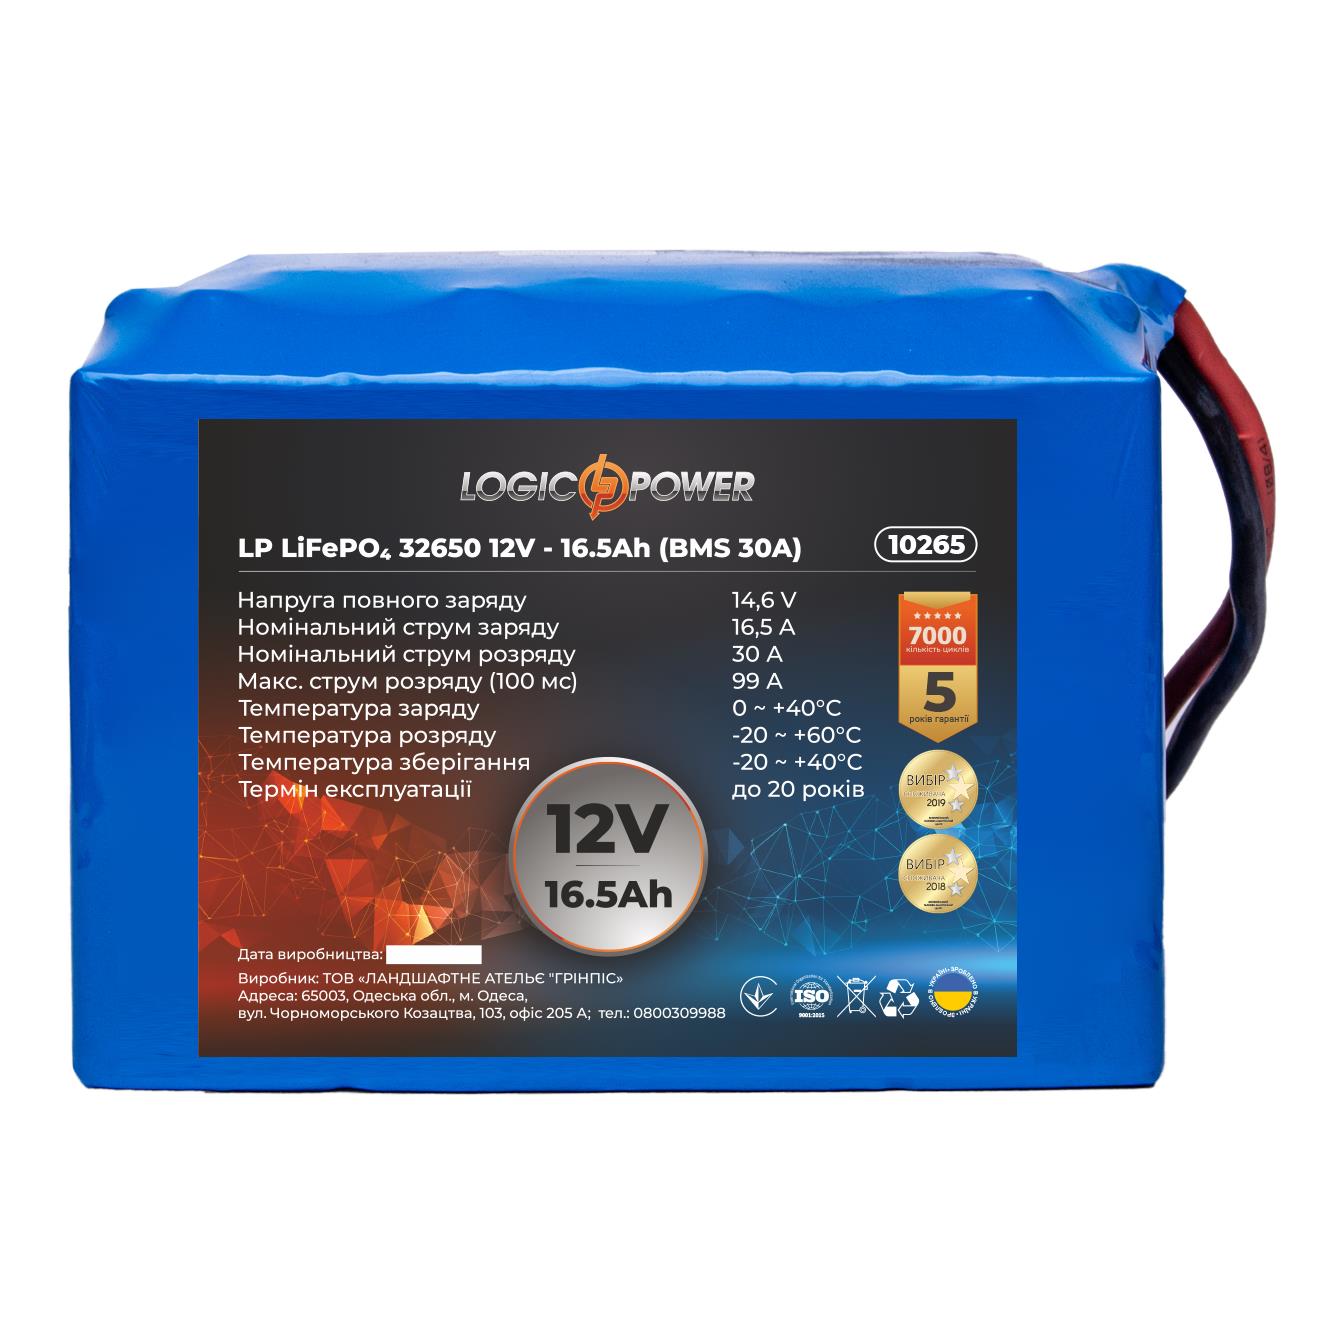 Аккумулятор литий-железо-фосфатный LogicPower LP LiFePO4 32650 12V - 16.5 Ah (BMS 30A) (10265)